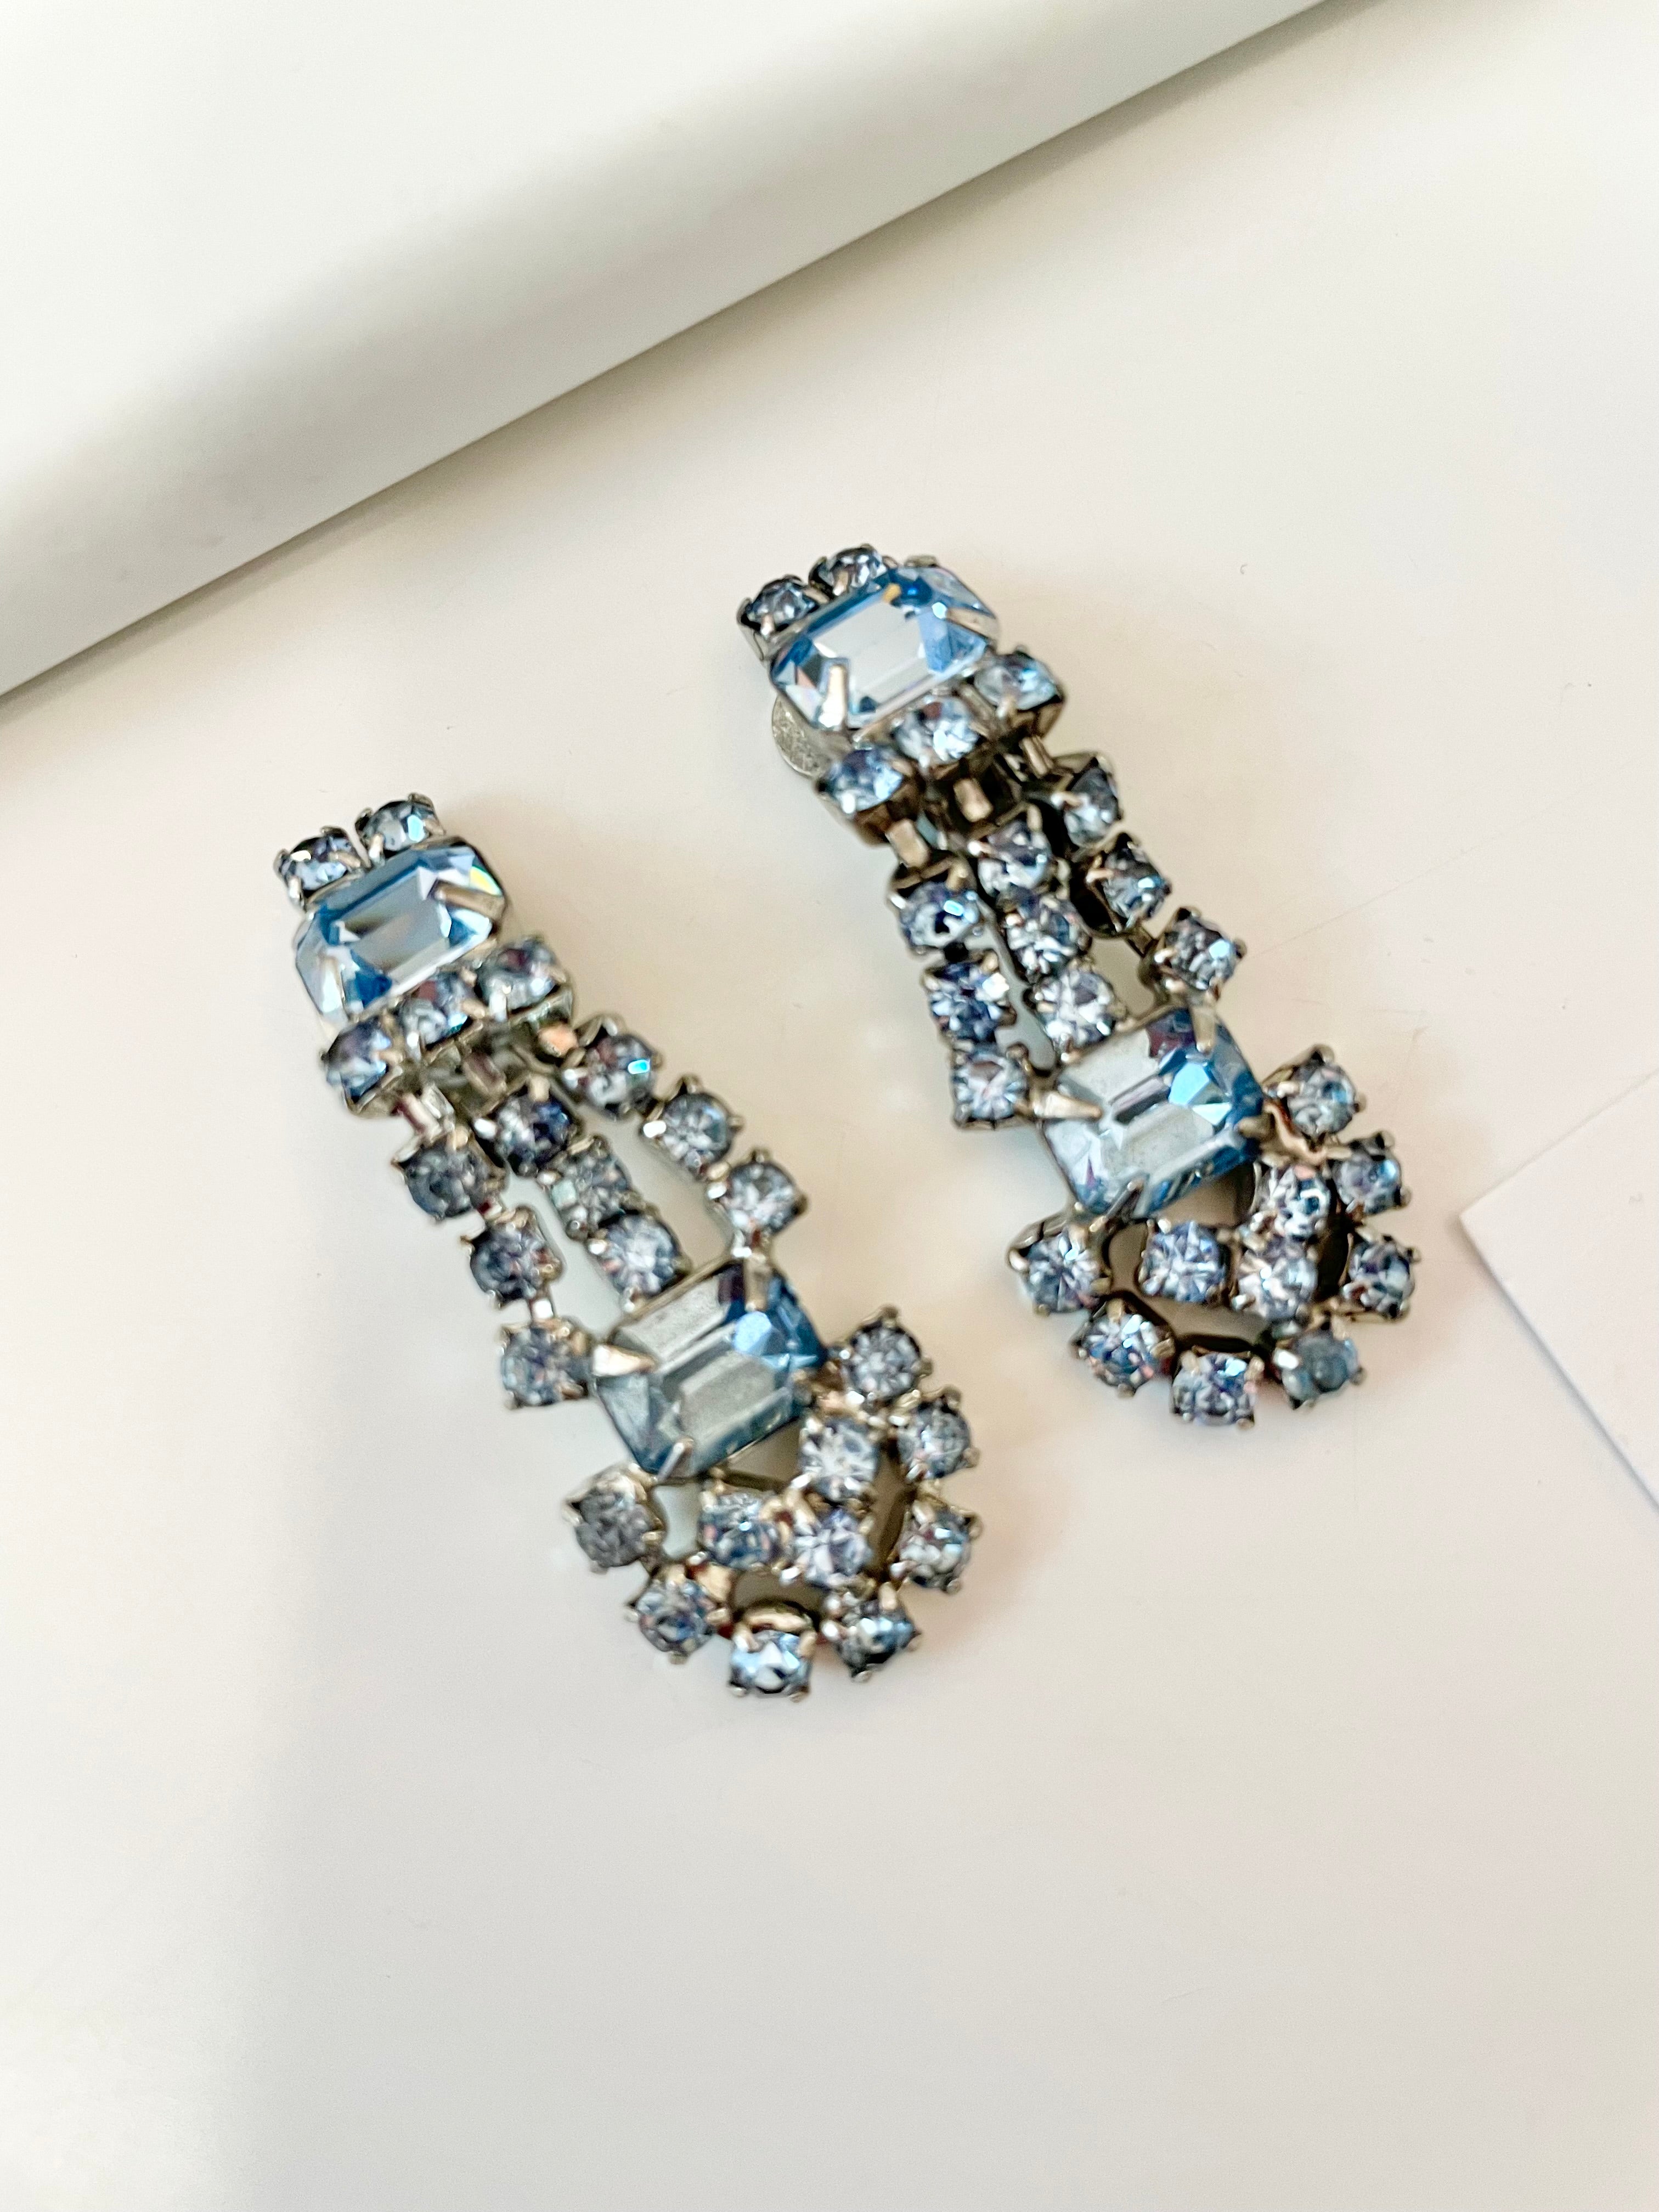 Vintage soft icy blue, stunning drop earrings.... so elegant!